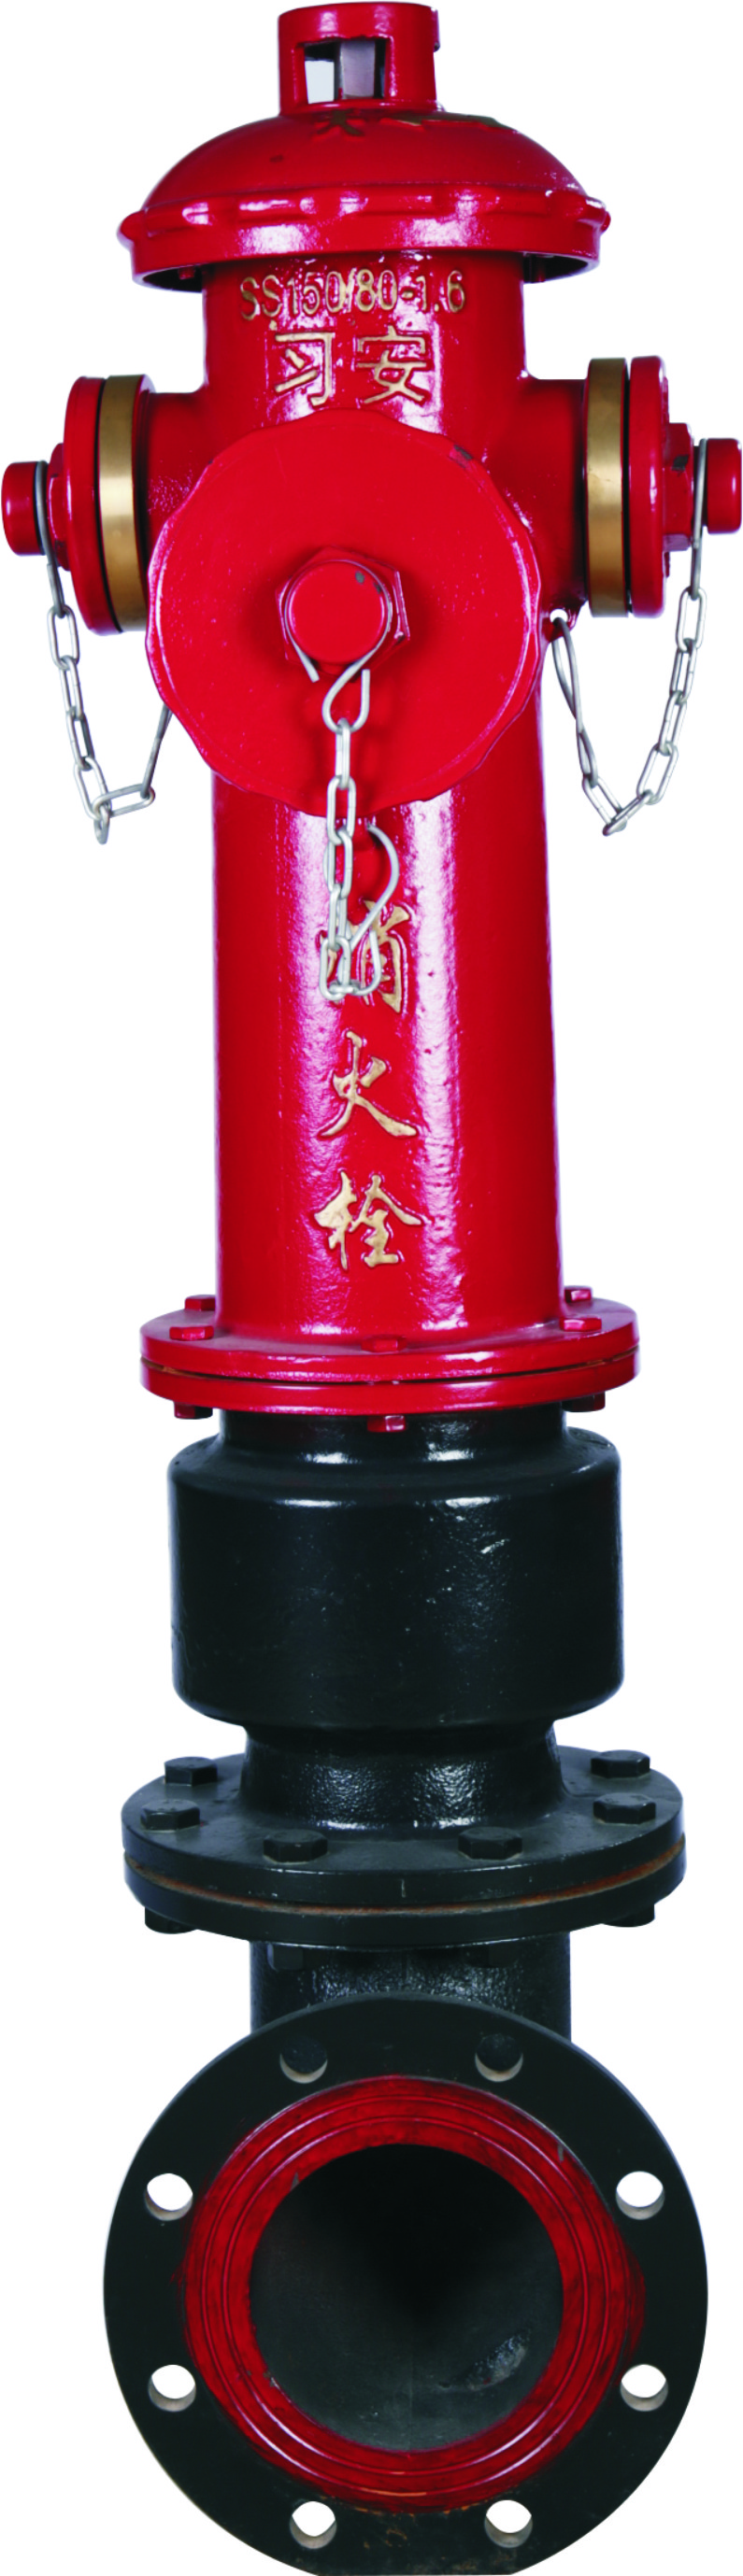 聚梁氏 SS100/65-1.6 地上式室外消火栓